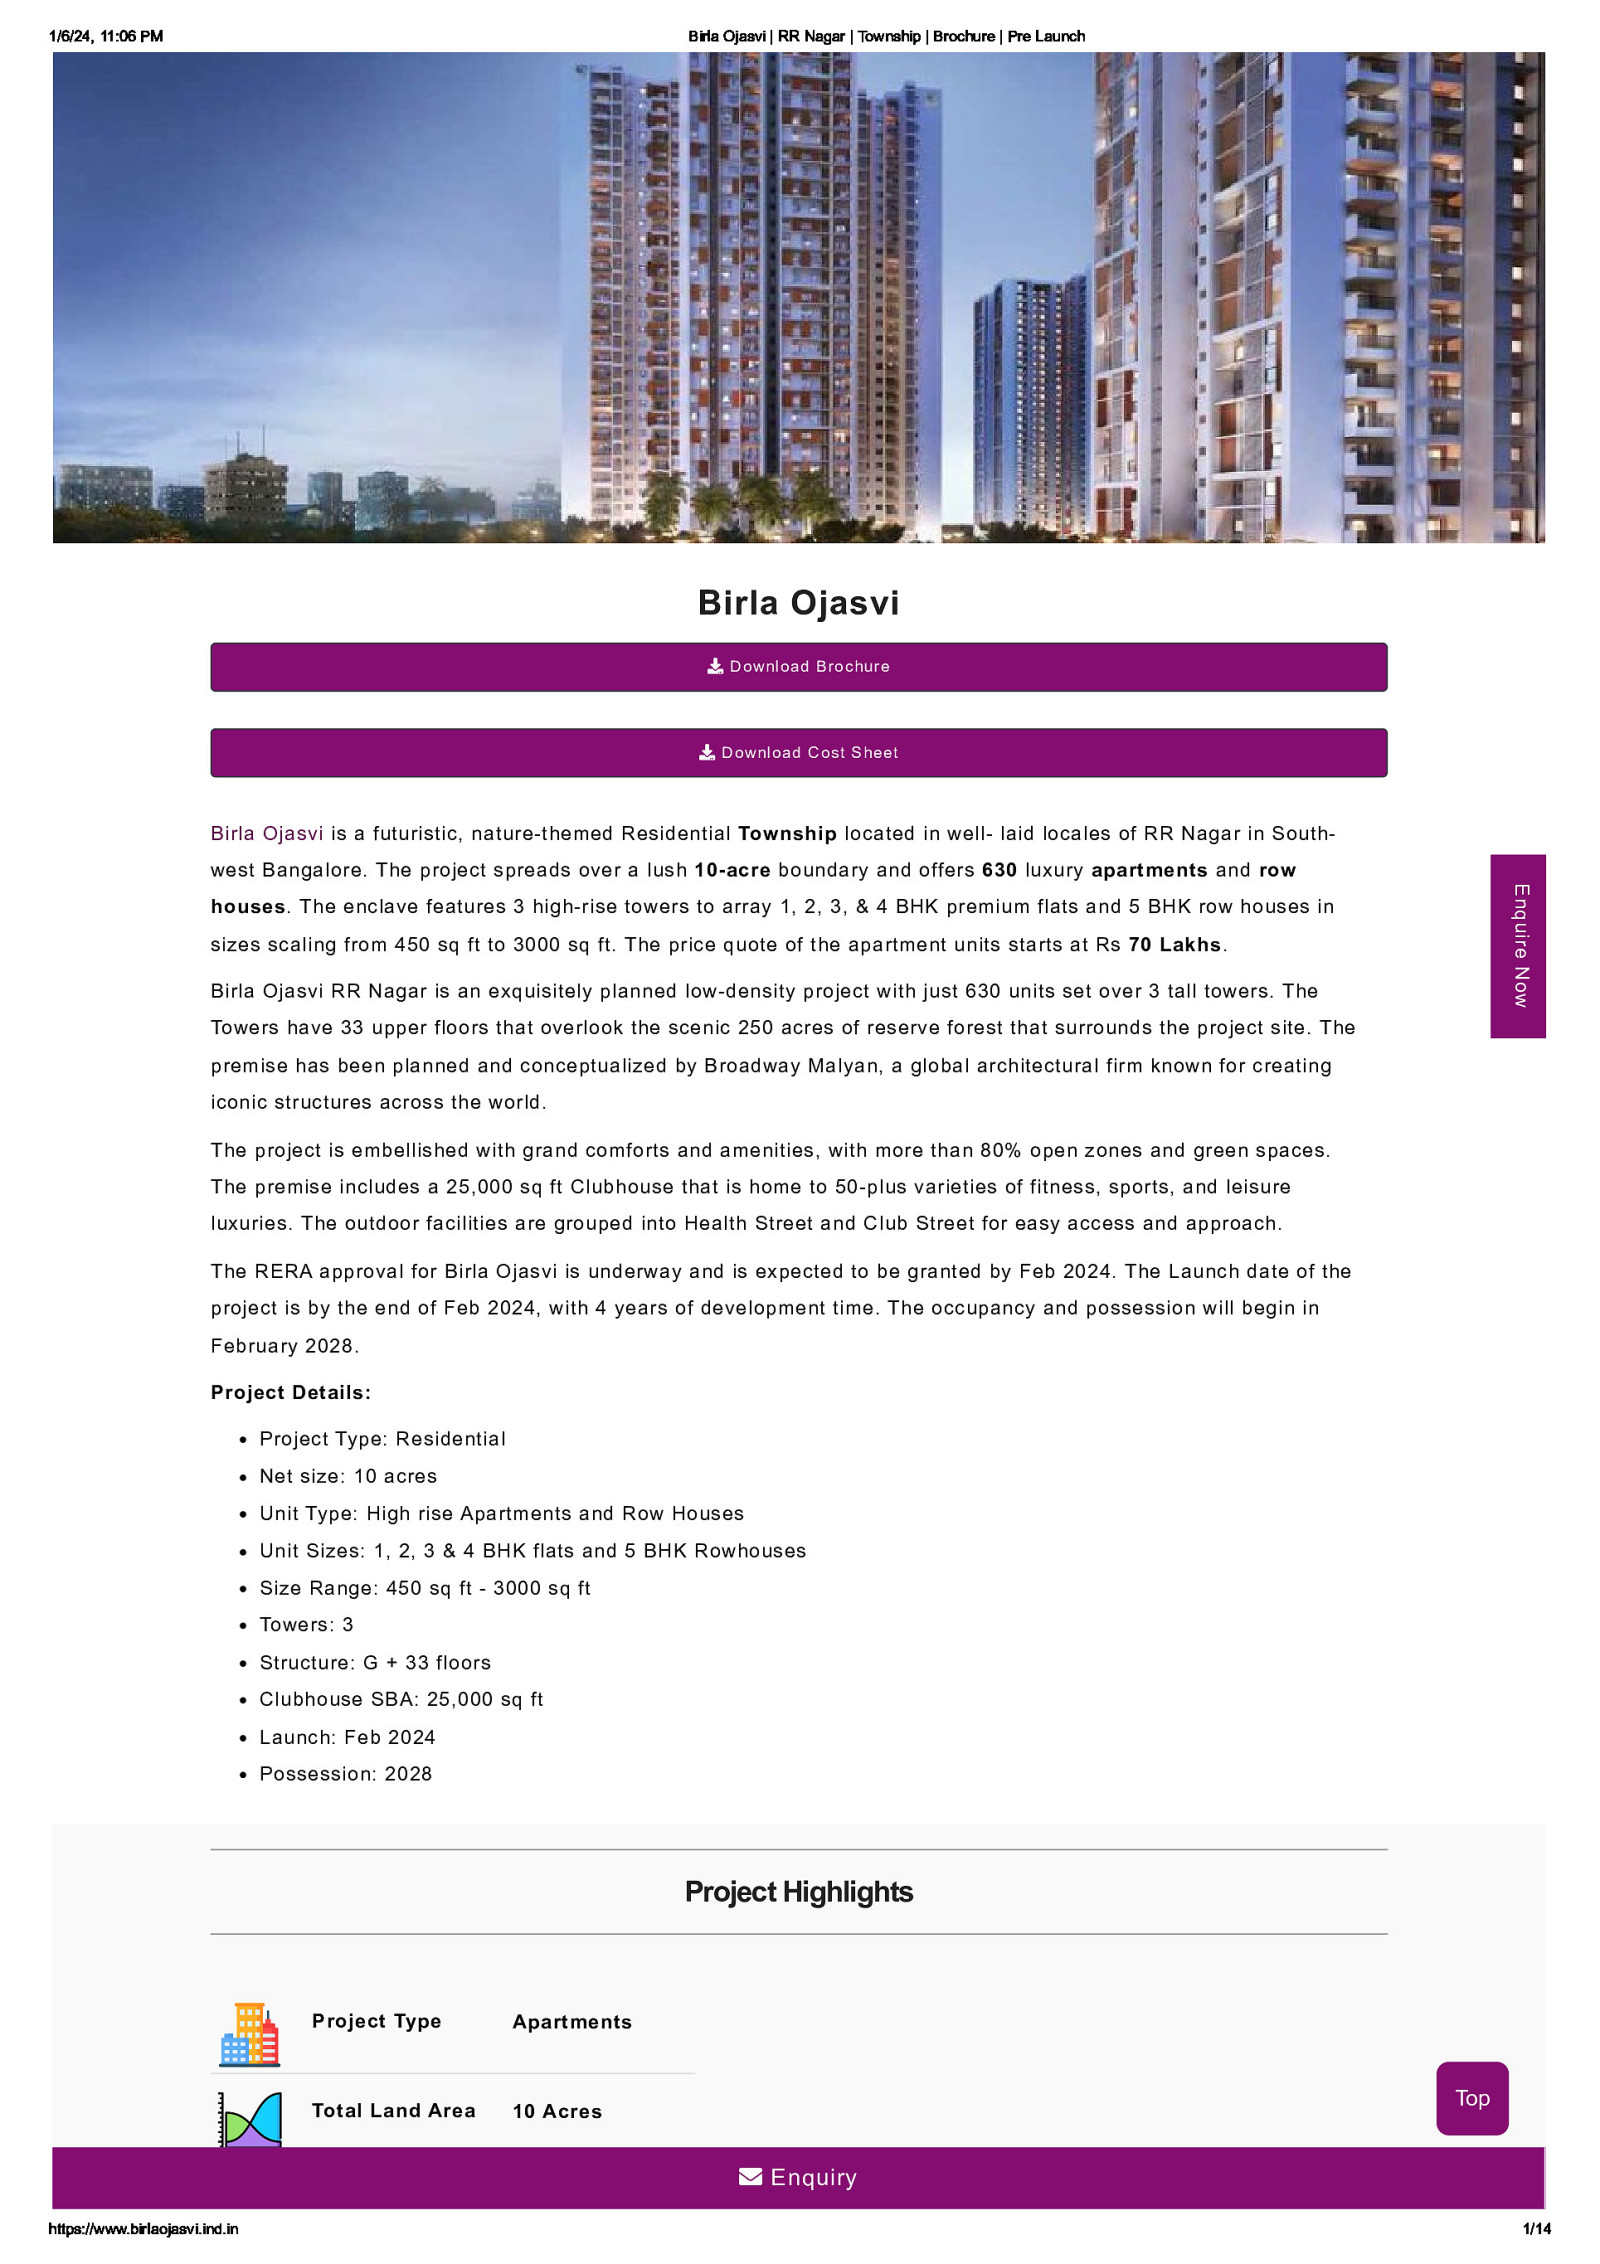 Mixed Premium Apartment in Bangalore at Birla Ojasvi